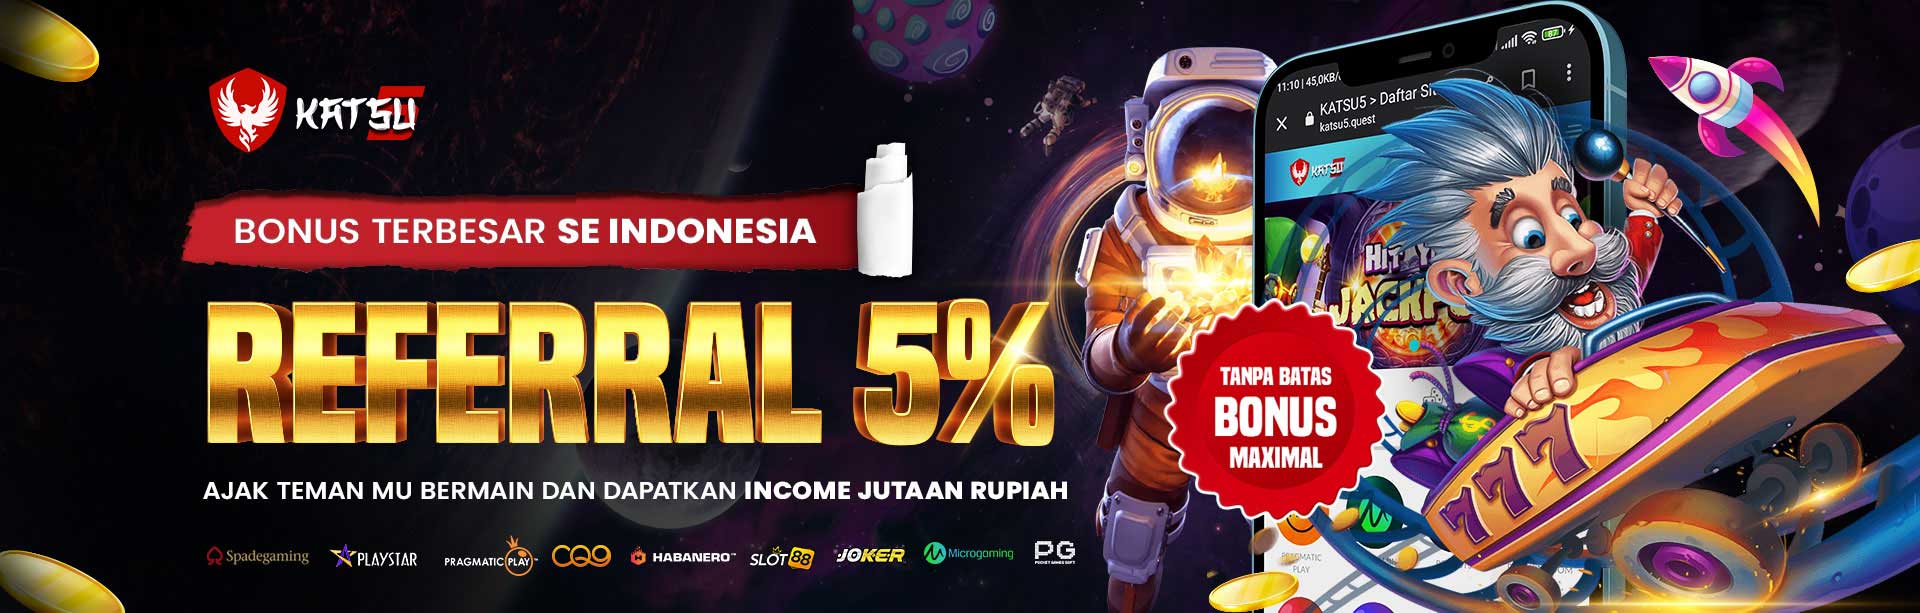 Bonus referral Terbesar se Indonesia Raya 5%